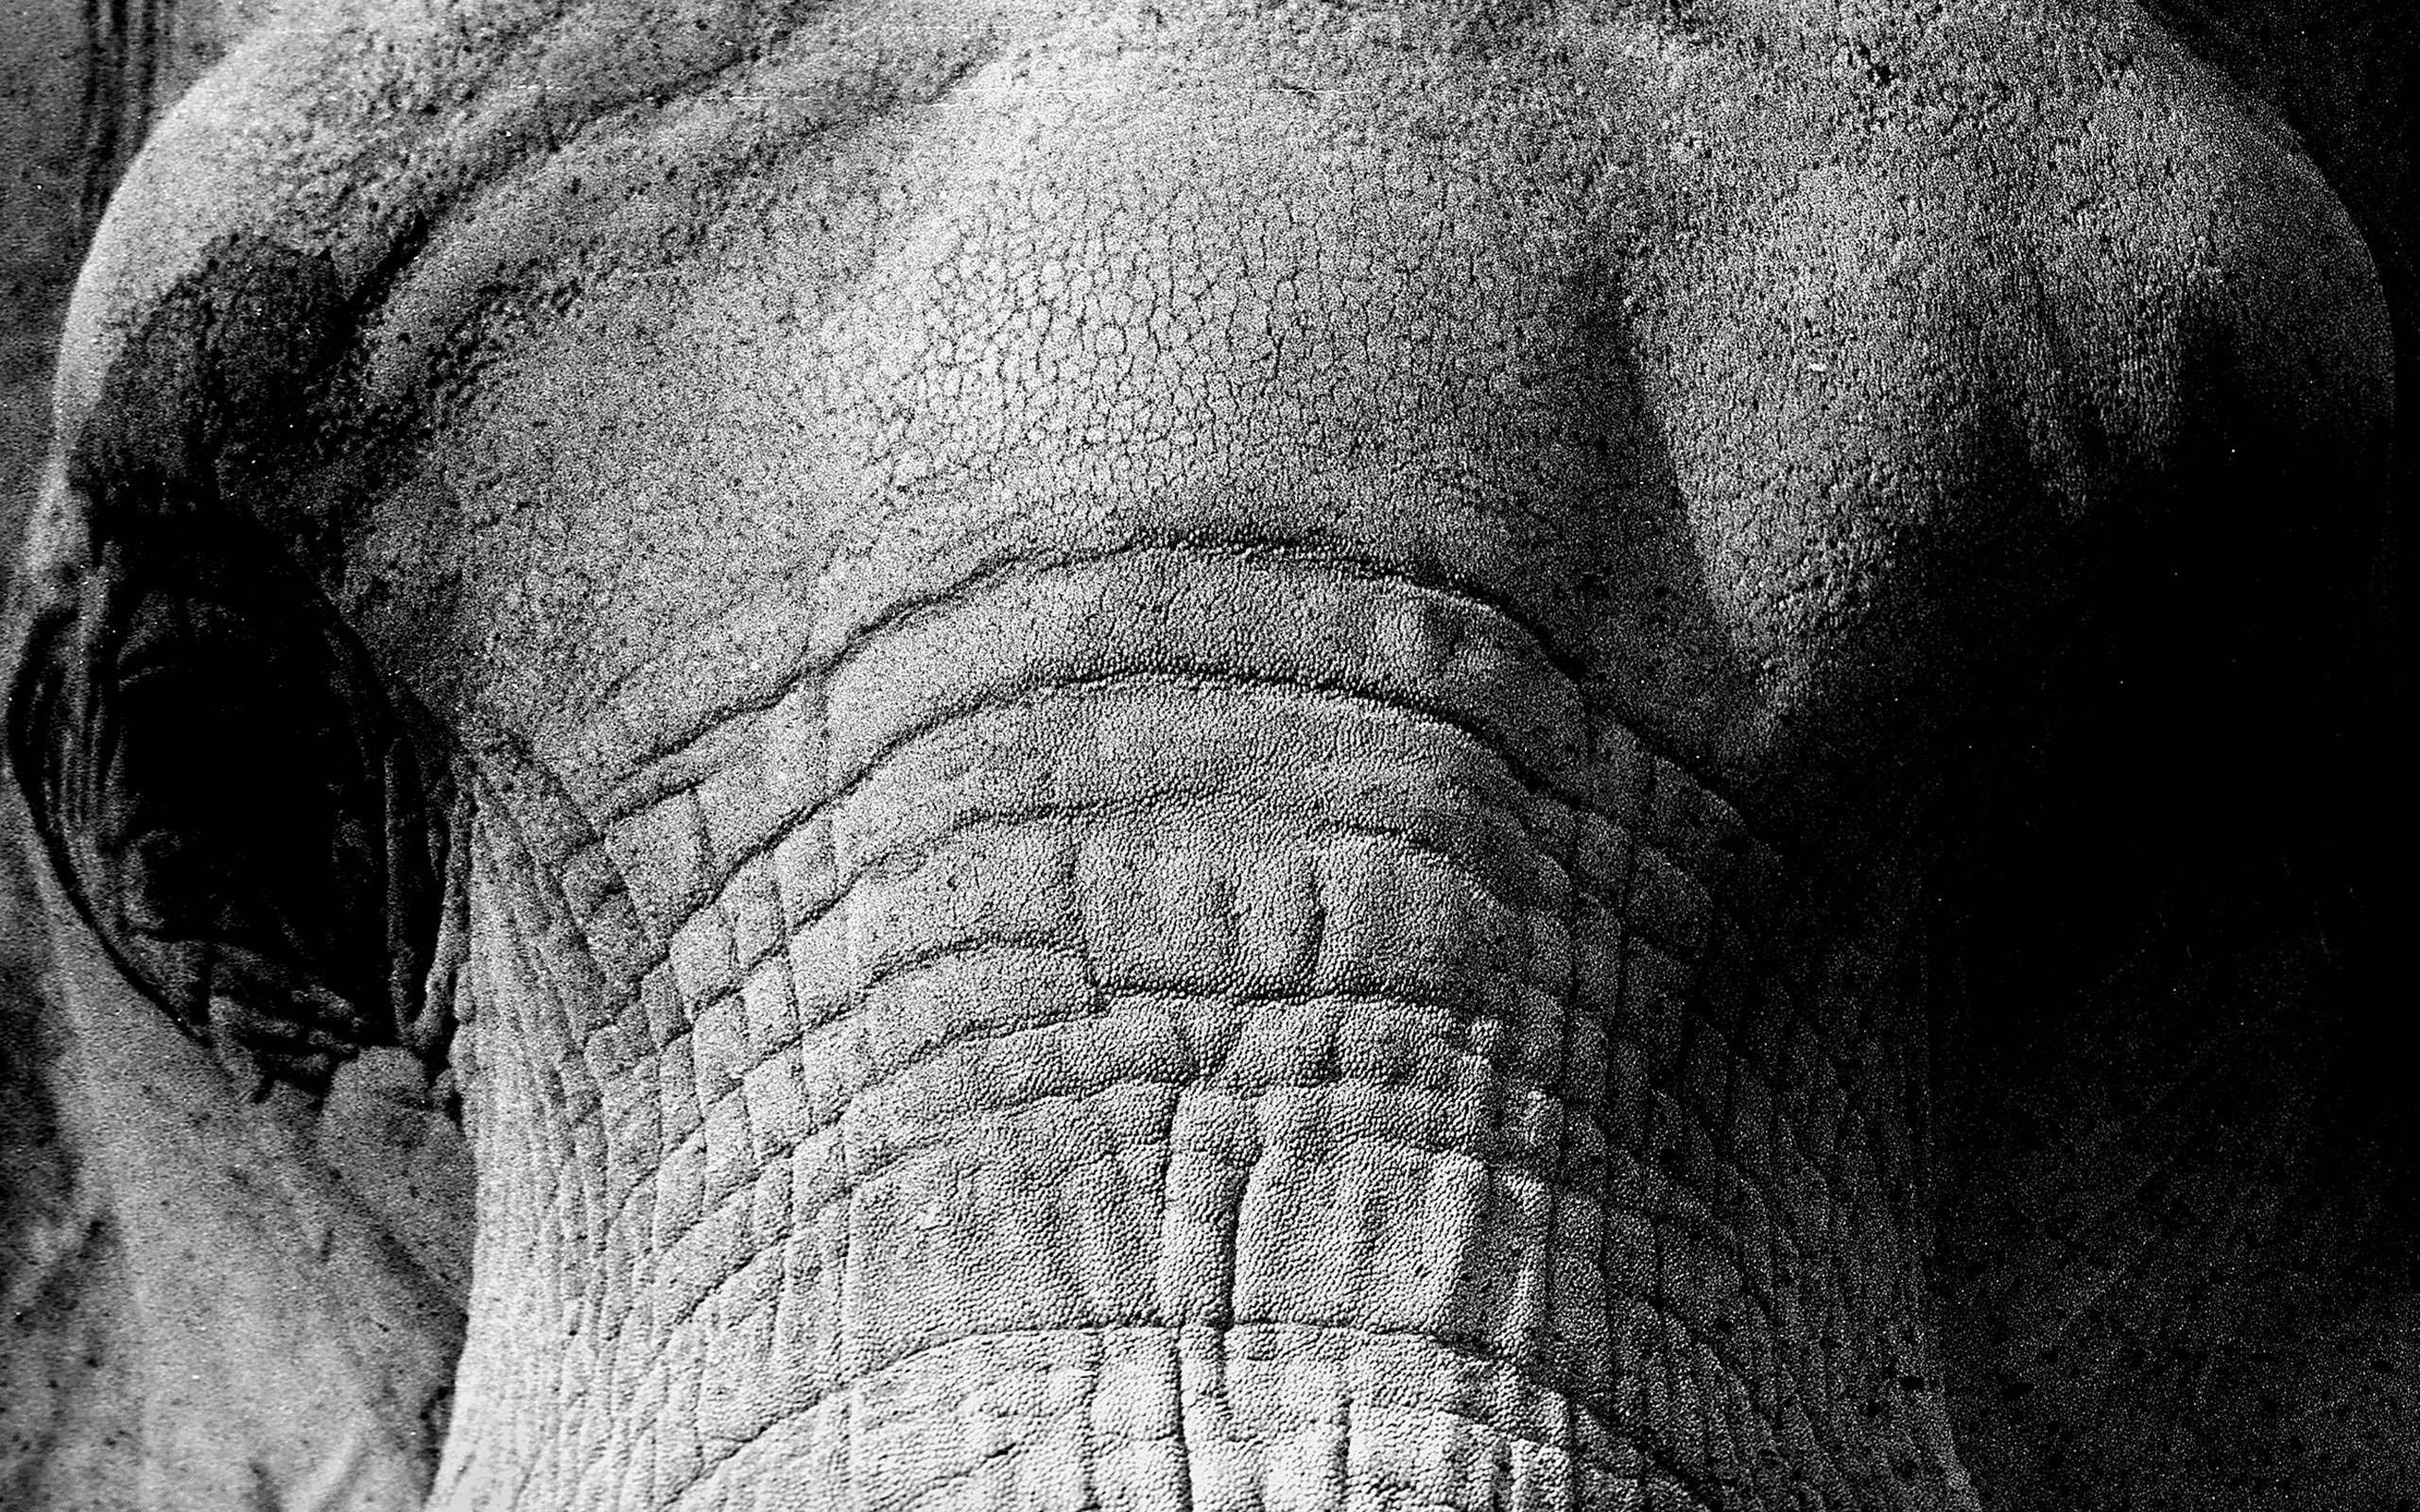 nature, elephant, close-up, one animal, animal themes, animal skin